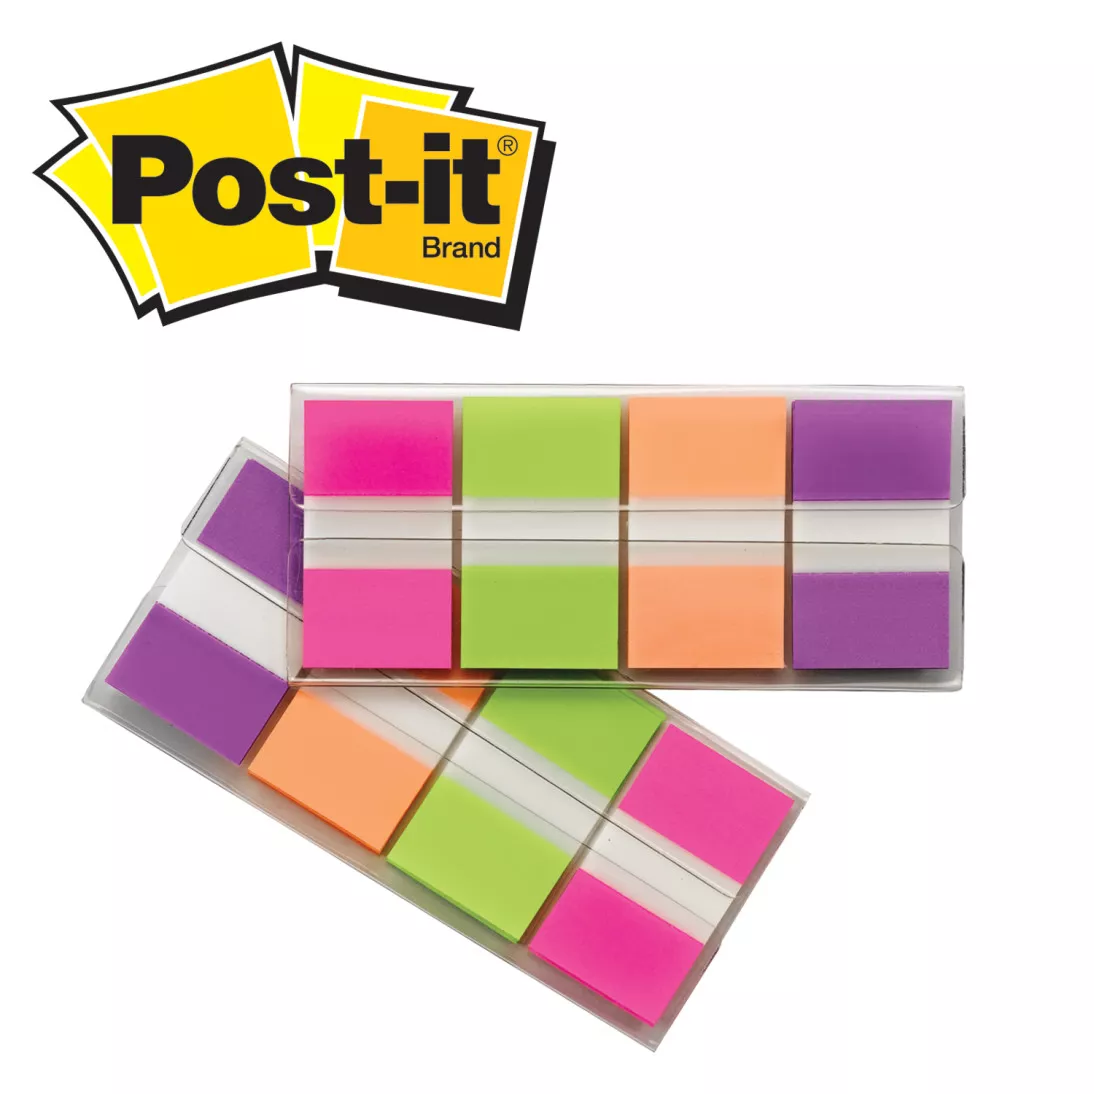 Post-it® Flags 680-PGOP2, .94 in. x 1.7 in. (23.8 mm x 43.2 mm) Blue,
Purple, Green, Orange 24 pk/cs